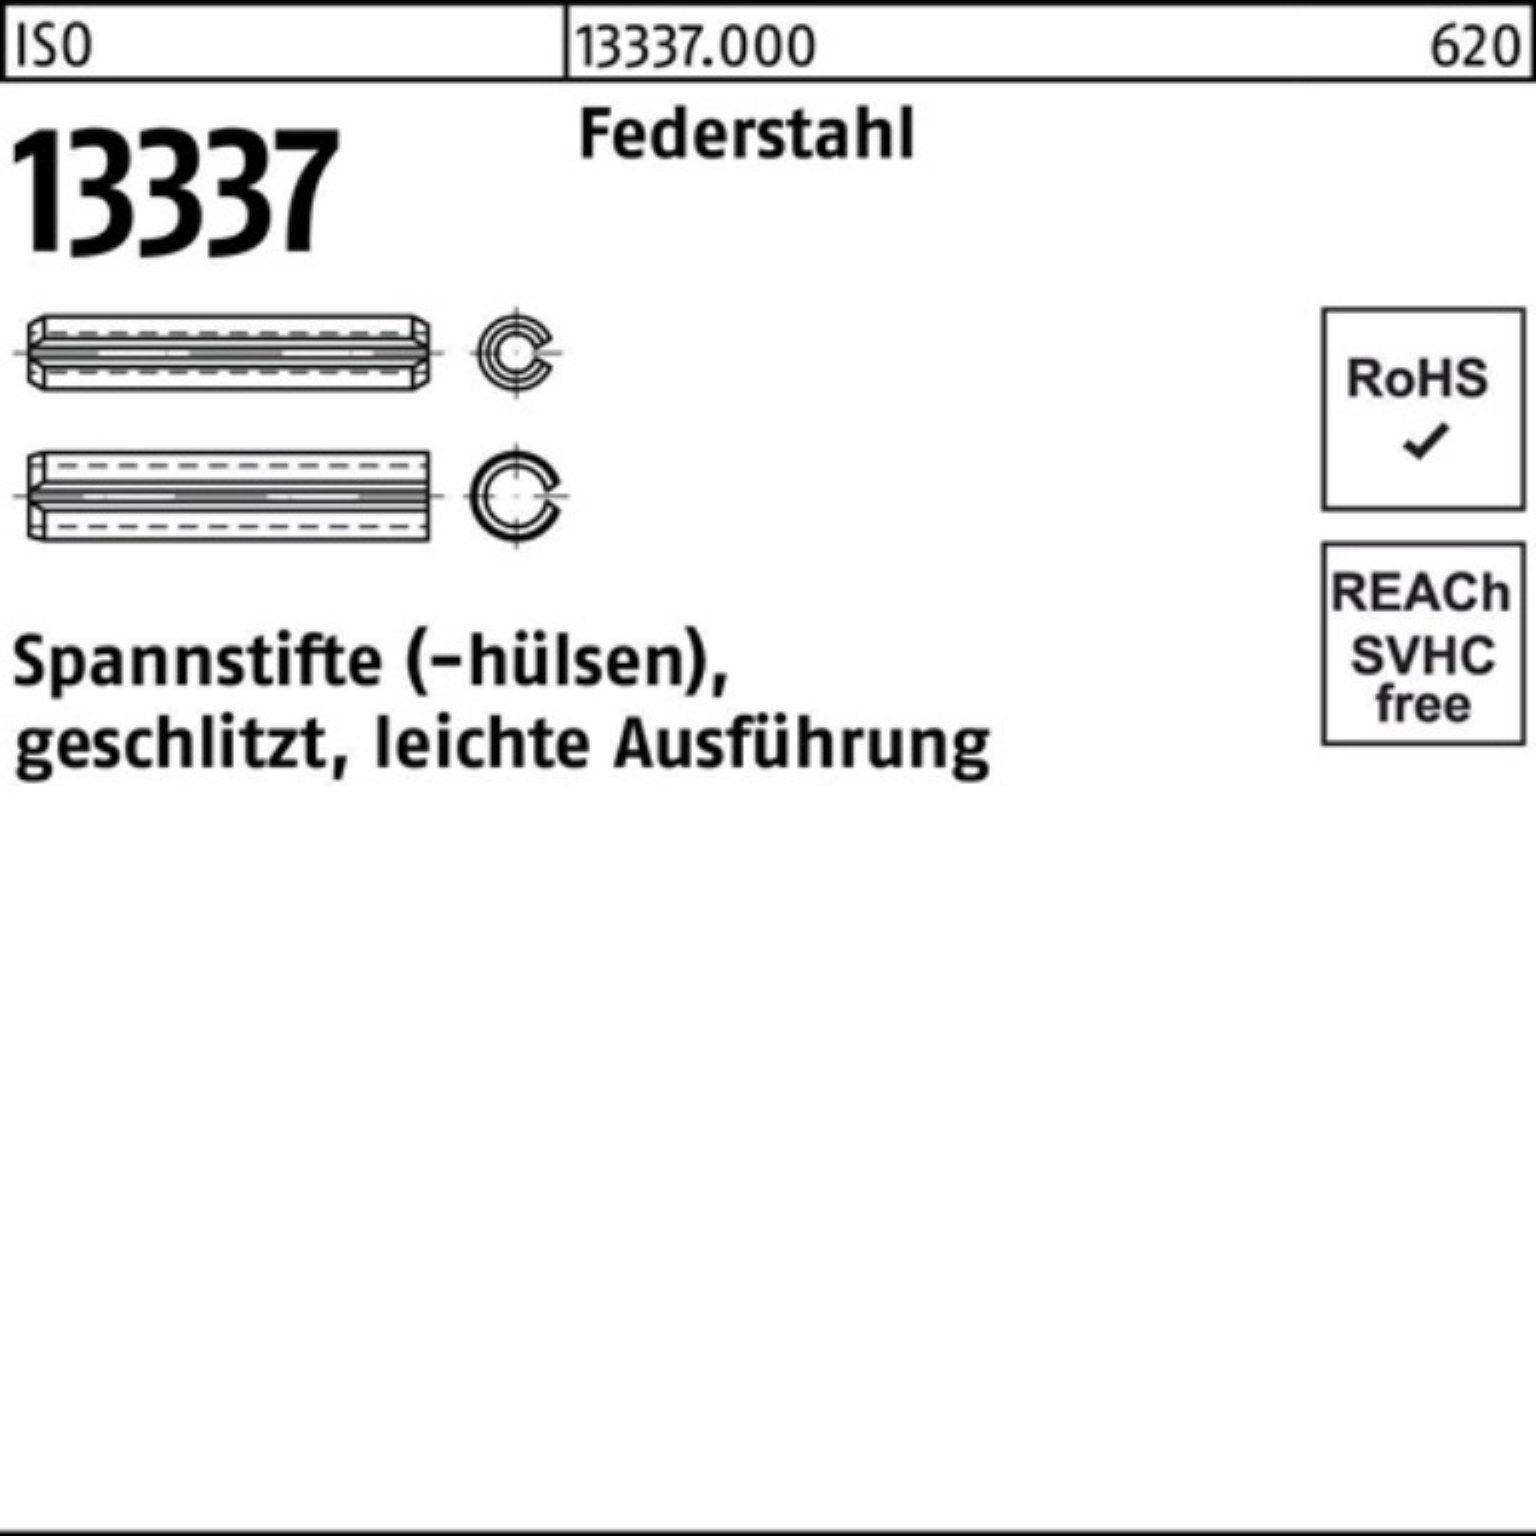 16x 13337 Spannstift Federstahl ISO 100er geschlitzt lei Reyher 16 Pack Spannstifthülse